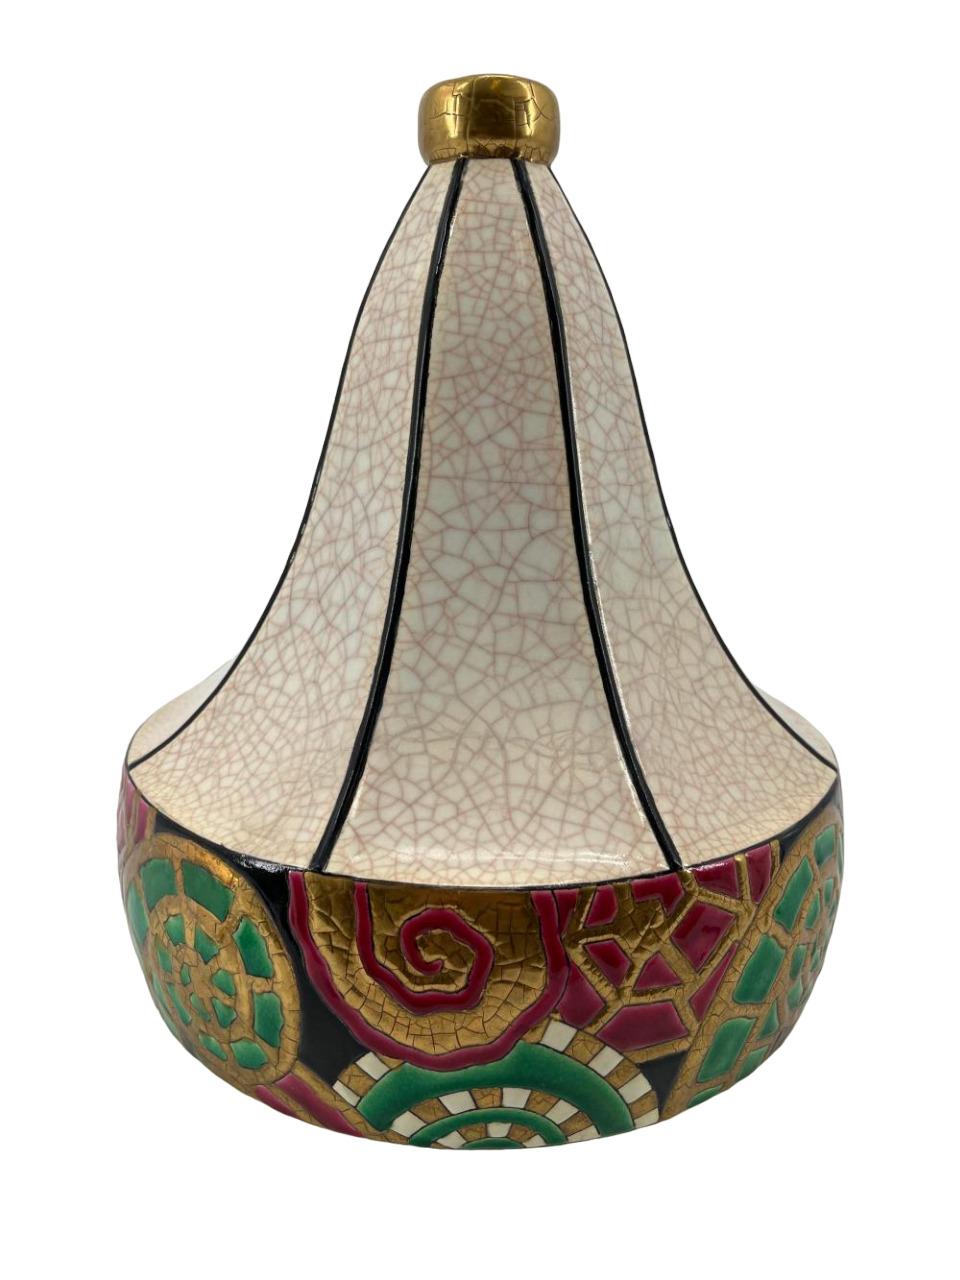 Un grand vase Art Déco en céramique, de forme polygonale, décoré d'une glaçure craquelée crème et d'émaux aux couleurs vives, avec un freize cloisonné de frondes de fougères stylisées. Contre-titre imprimé 